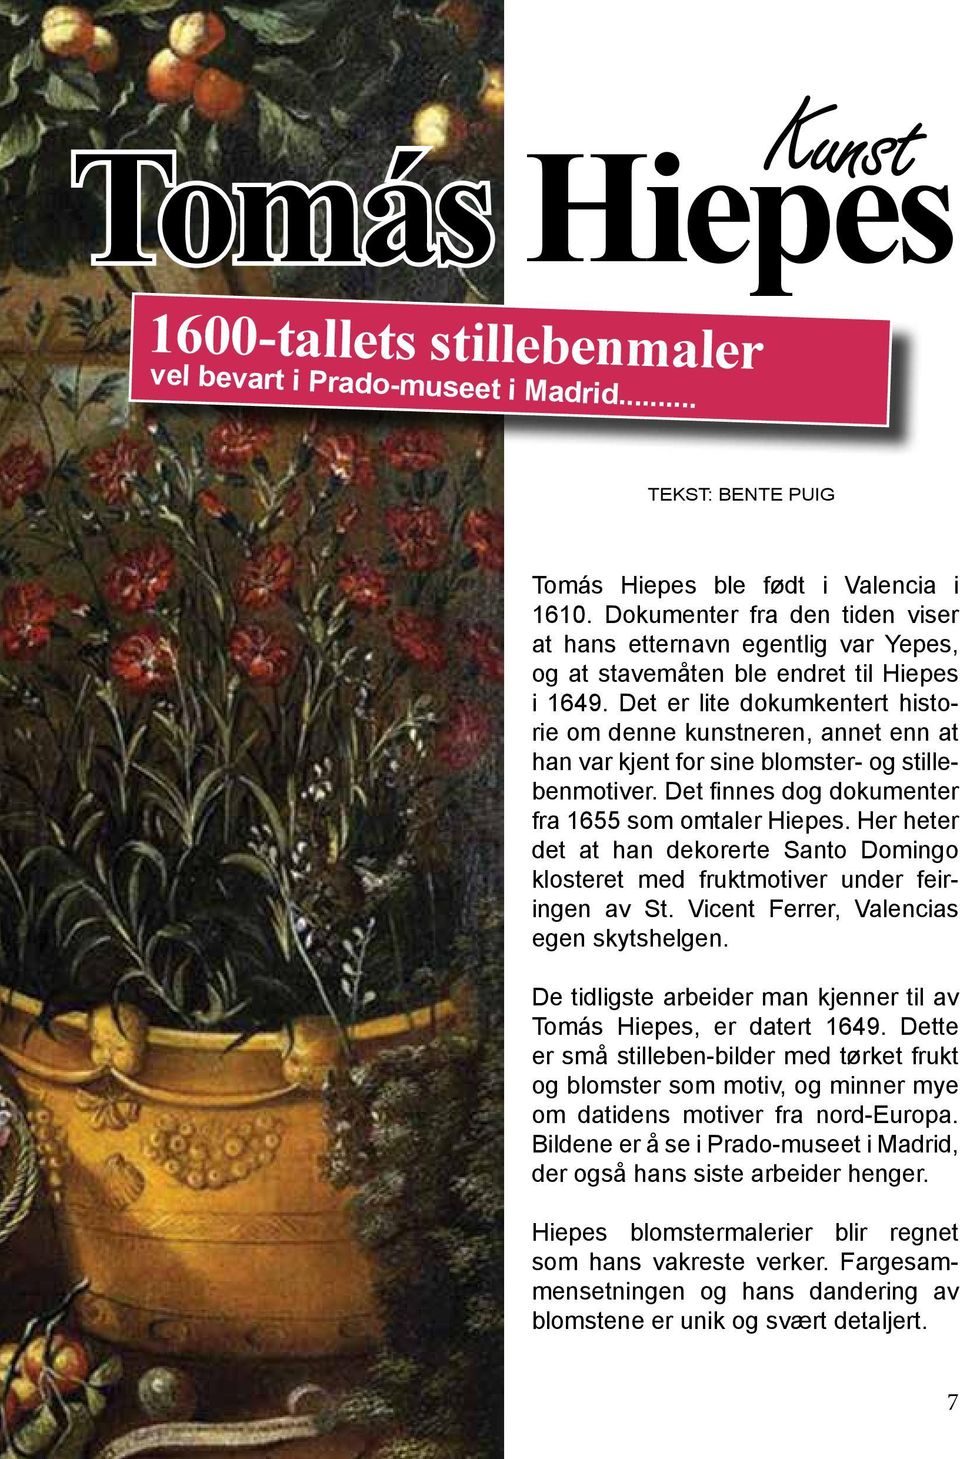 Det er lite dokumkentert historie om denne kunstneren, annet enn at han var kjent for sine blomster- og stillebenmotiver. Det finnes dog dokumenter fra 1655 som omtaler Hiepes.